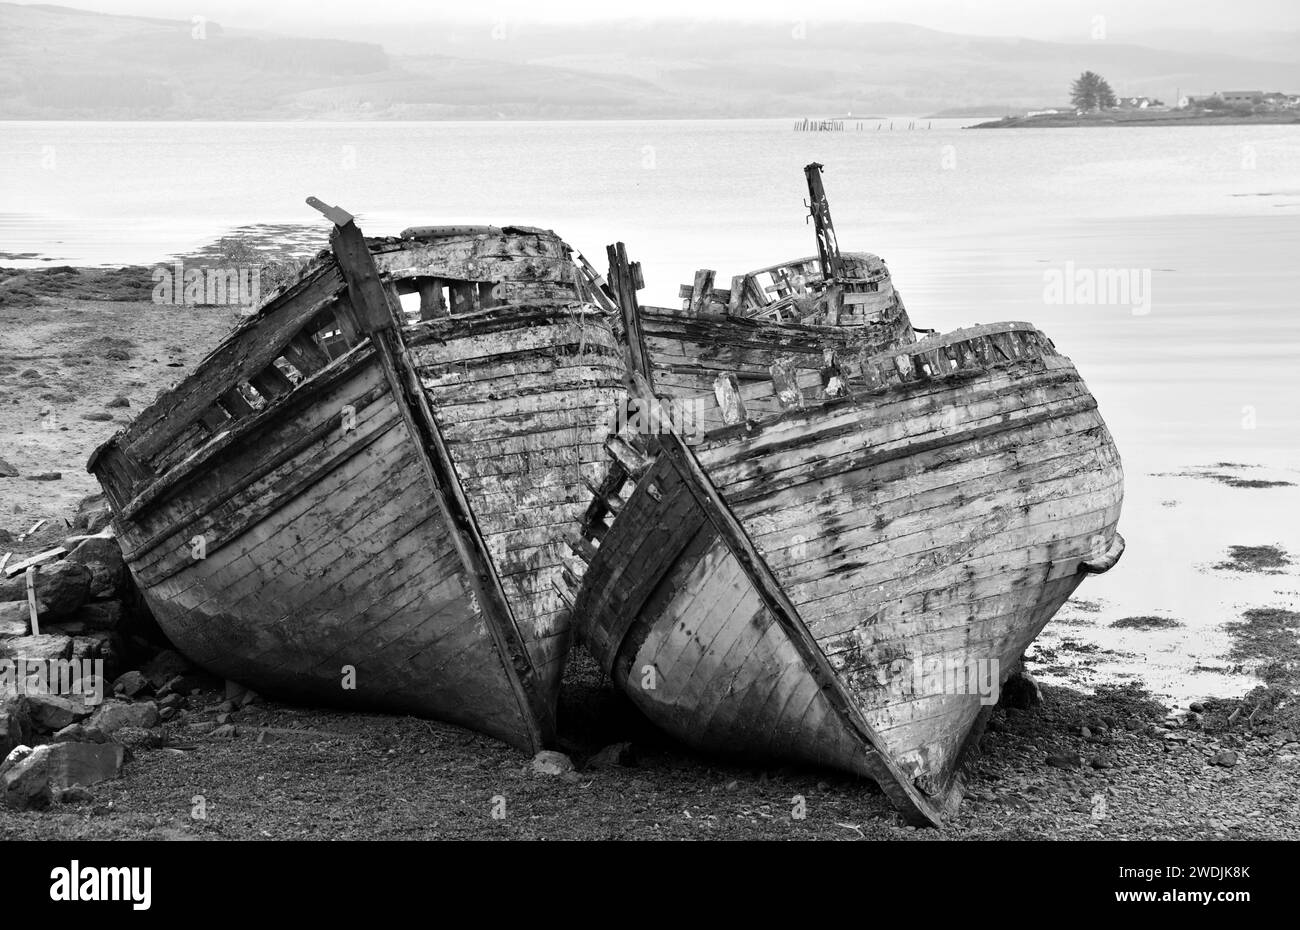 Ship wrecks on a beach Stock Photo